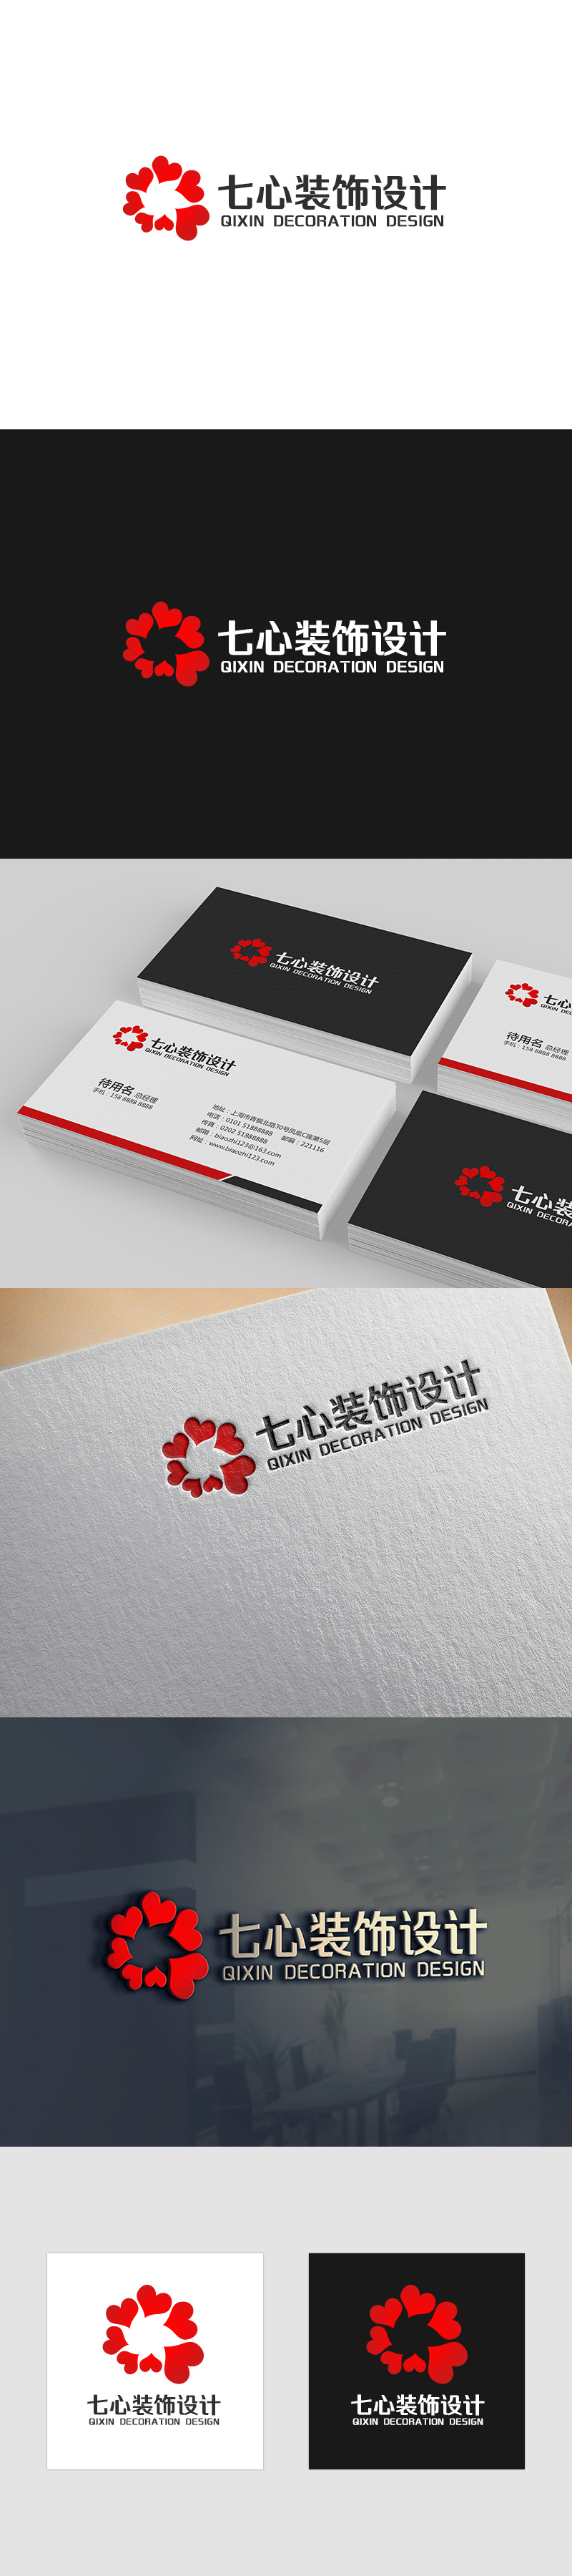 吴晓伟的昆明七心装饰设计有限公司logo设计